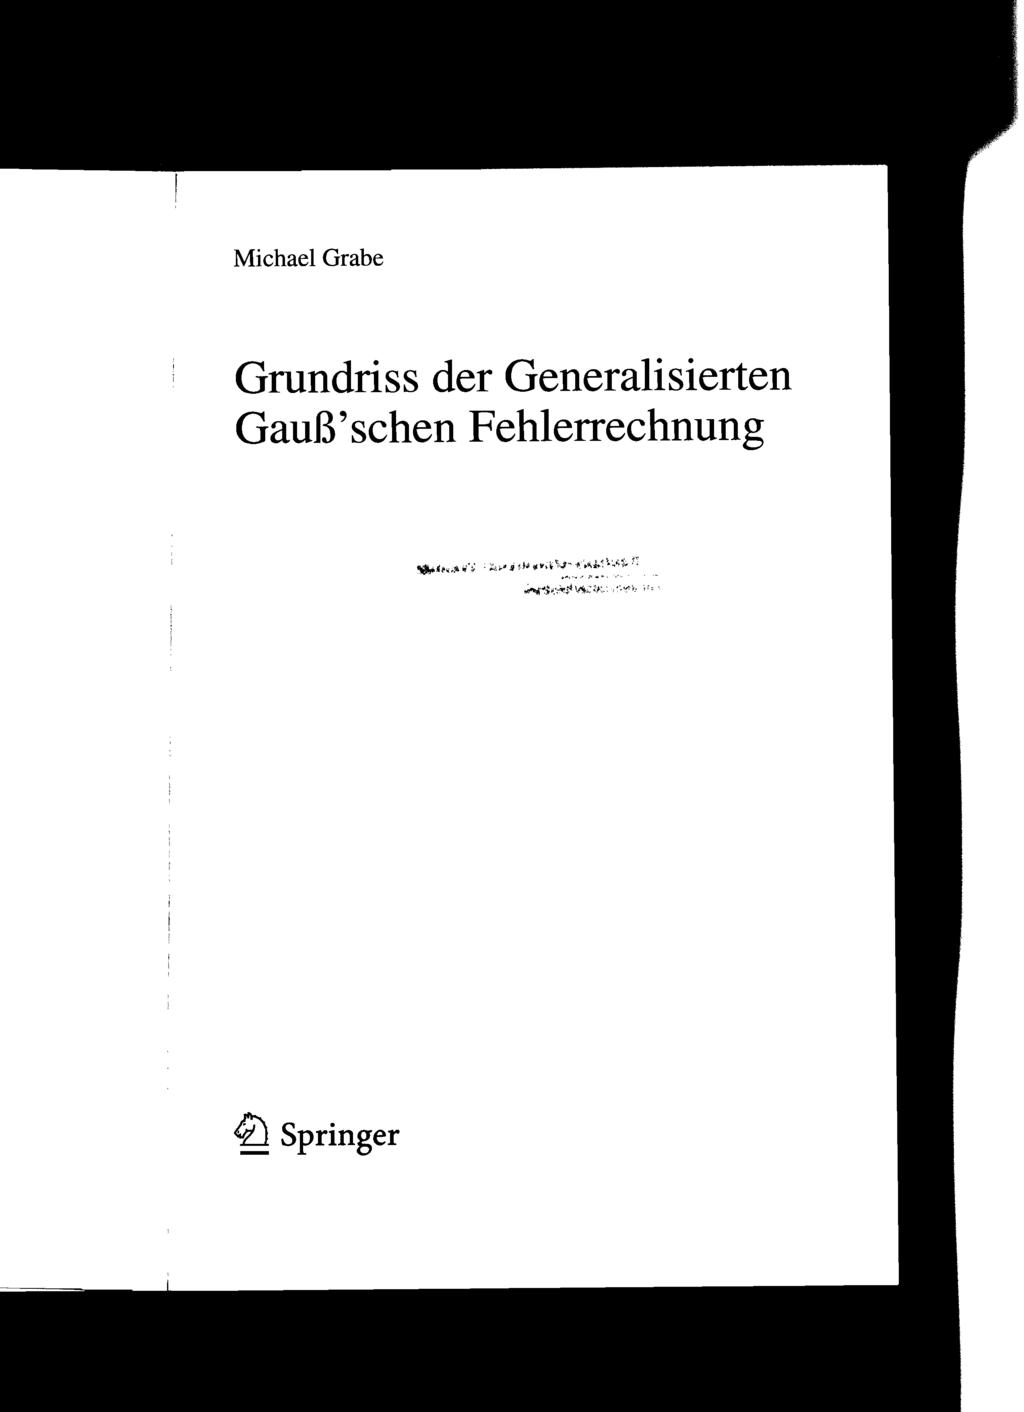 Michael Grabe Grundriss der Generalisierten Gauß'schen Fehlerrechnung ""Jl'..~.t. itj':; ~;.